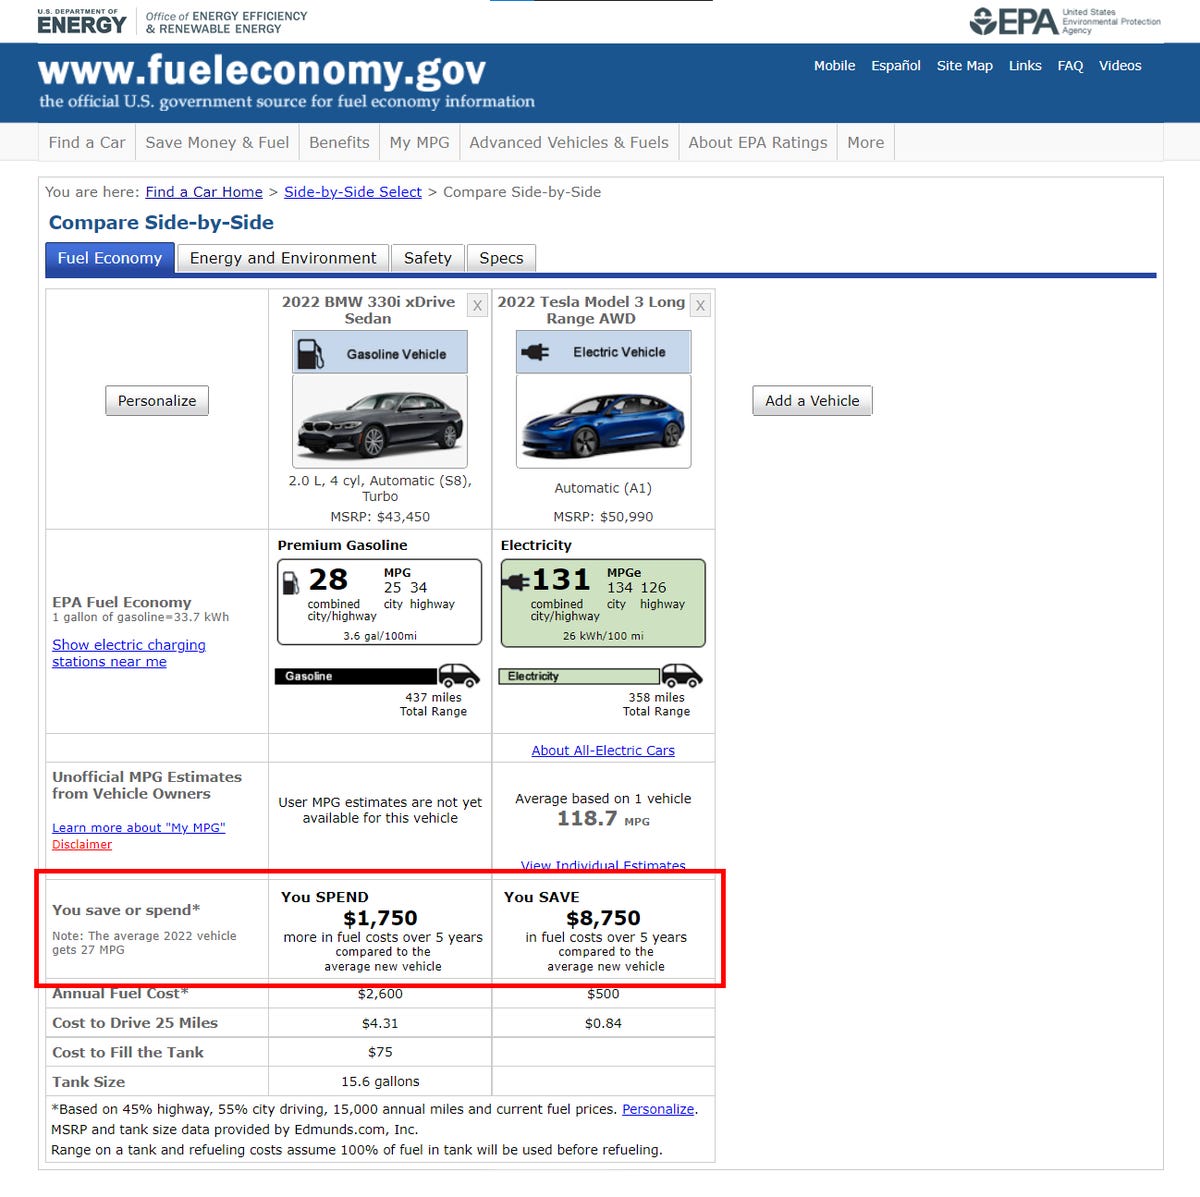 BMW 330i vs. Tesla Model 3 fuel costs